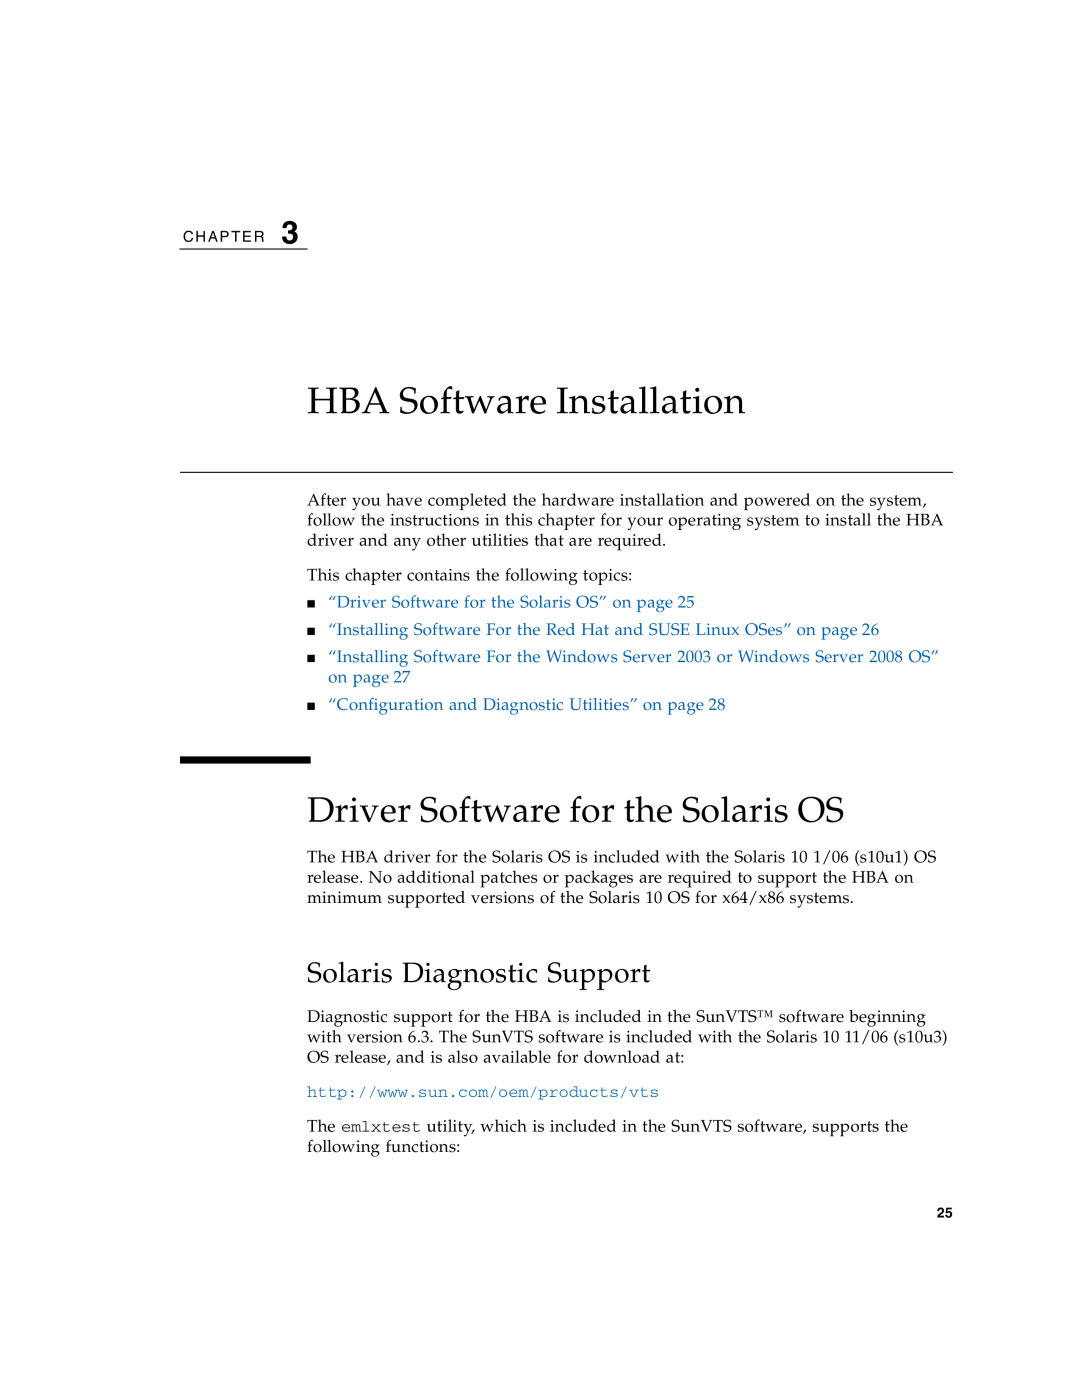 Sun Microsystems SG-XPCIE1FC-EM8-Z, SG-XPCIE2FC-EM8-Z manual HBA Software Installation, Driver Software for the Solaris OS 